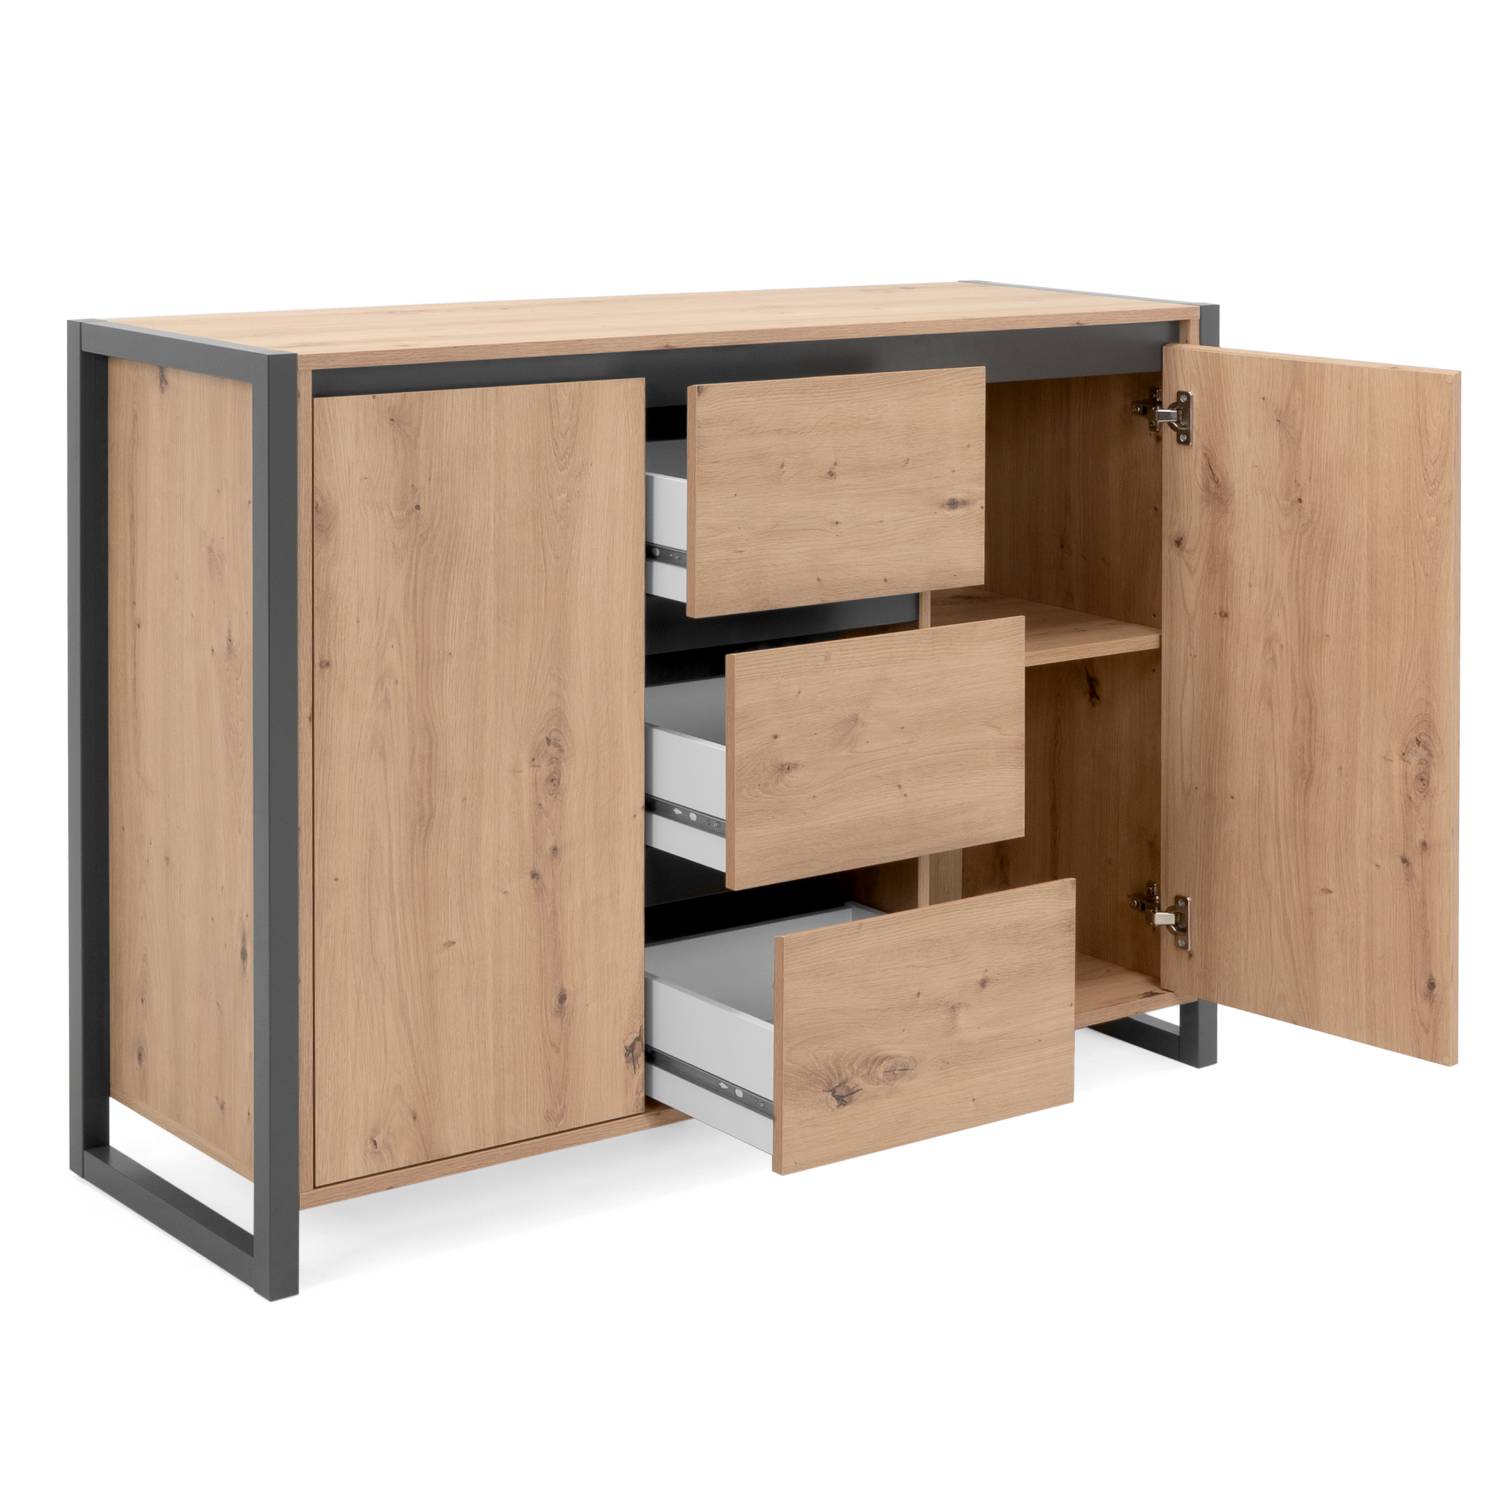 Sideboard Cupboard Storage Cabinet 3 Drawers Wood Oak Living Room Industrial Look